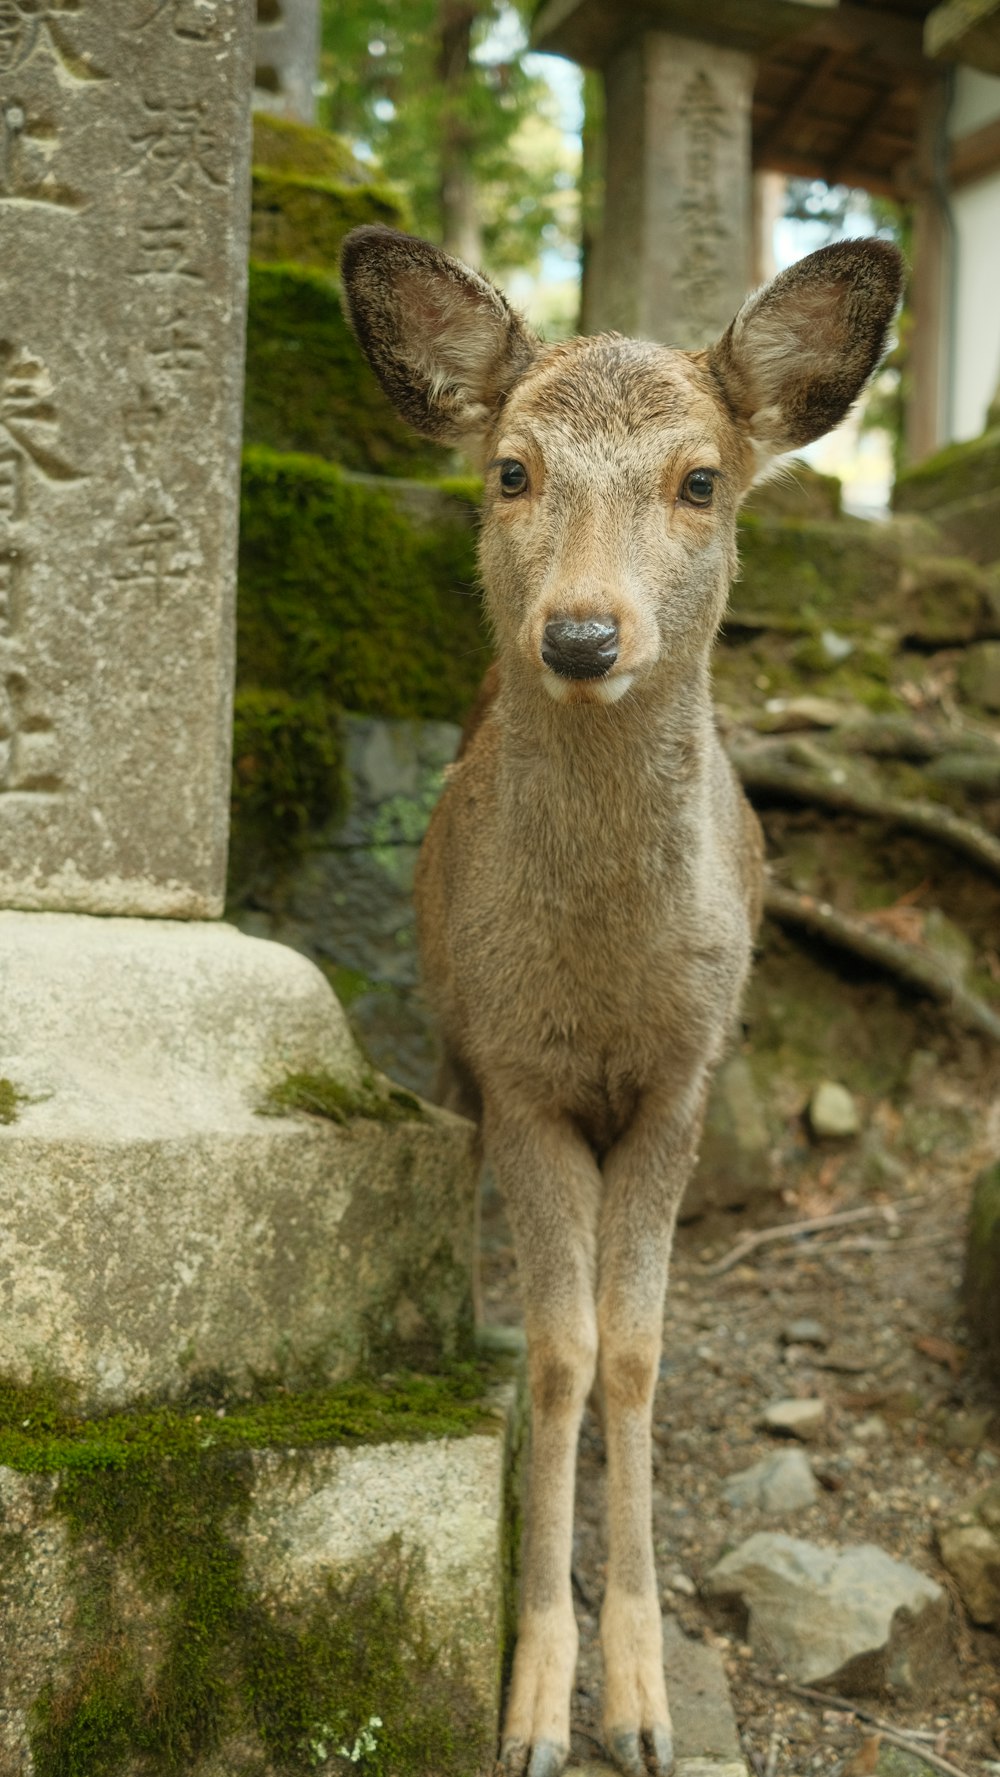 a small deer standing next to a stone pillar